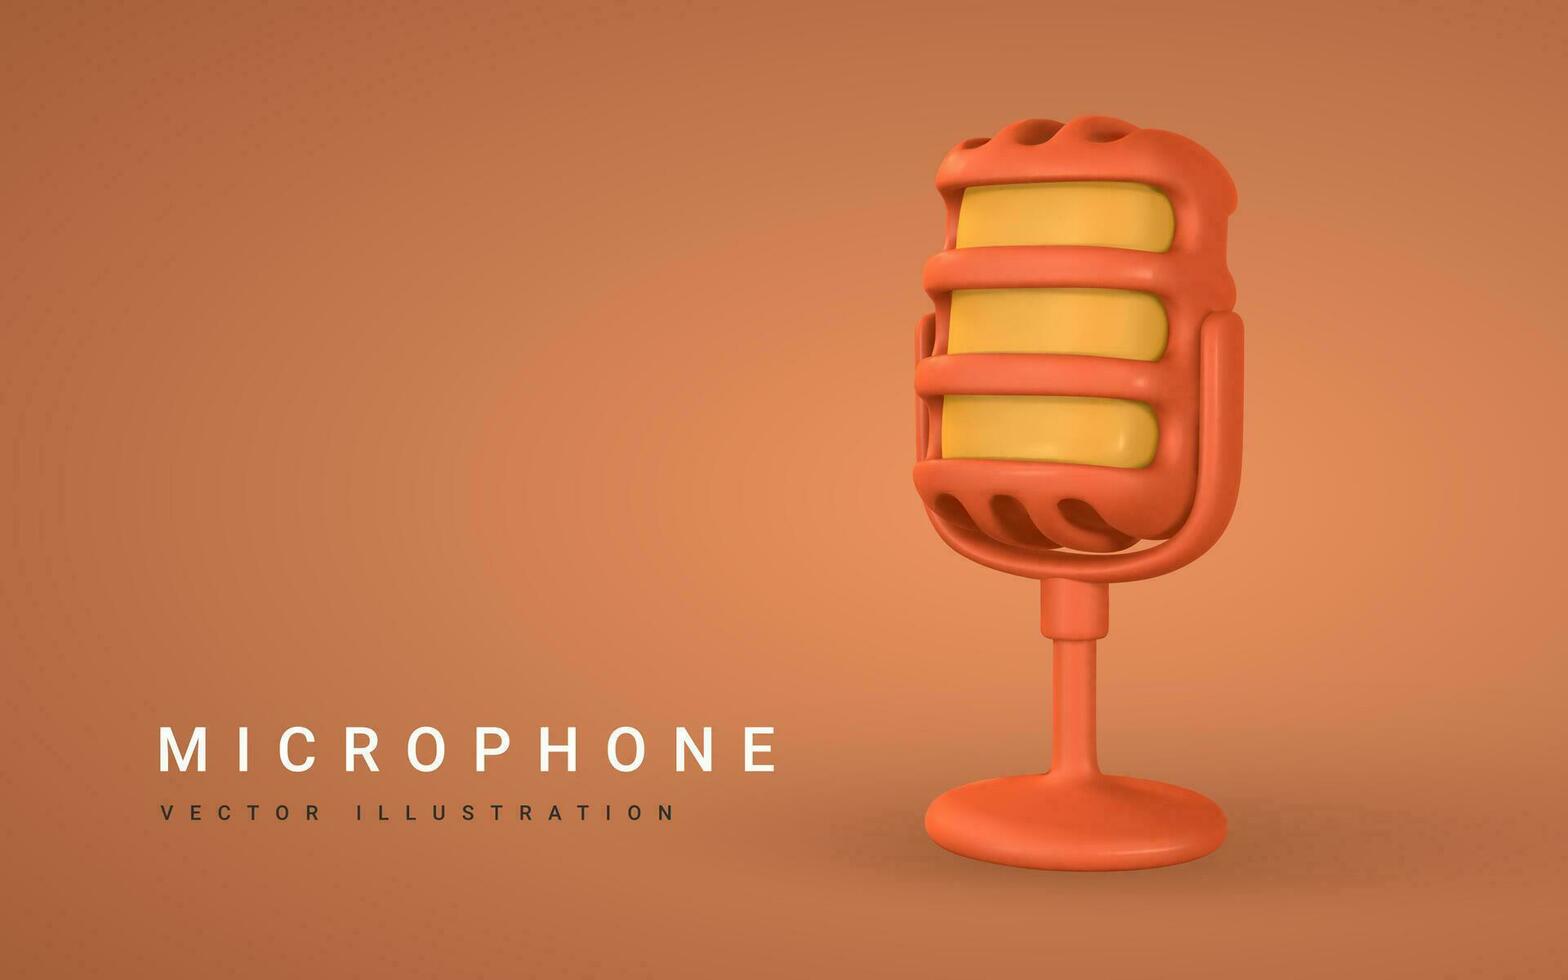 3d microfone para rádio, música ou karaokê. audio equipamento para transmissões e entrevistas dentro desenho animado estilo. vetor ilustração